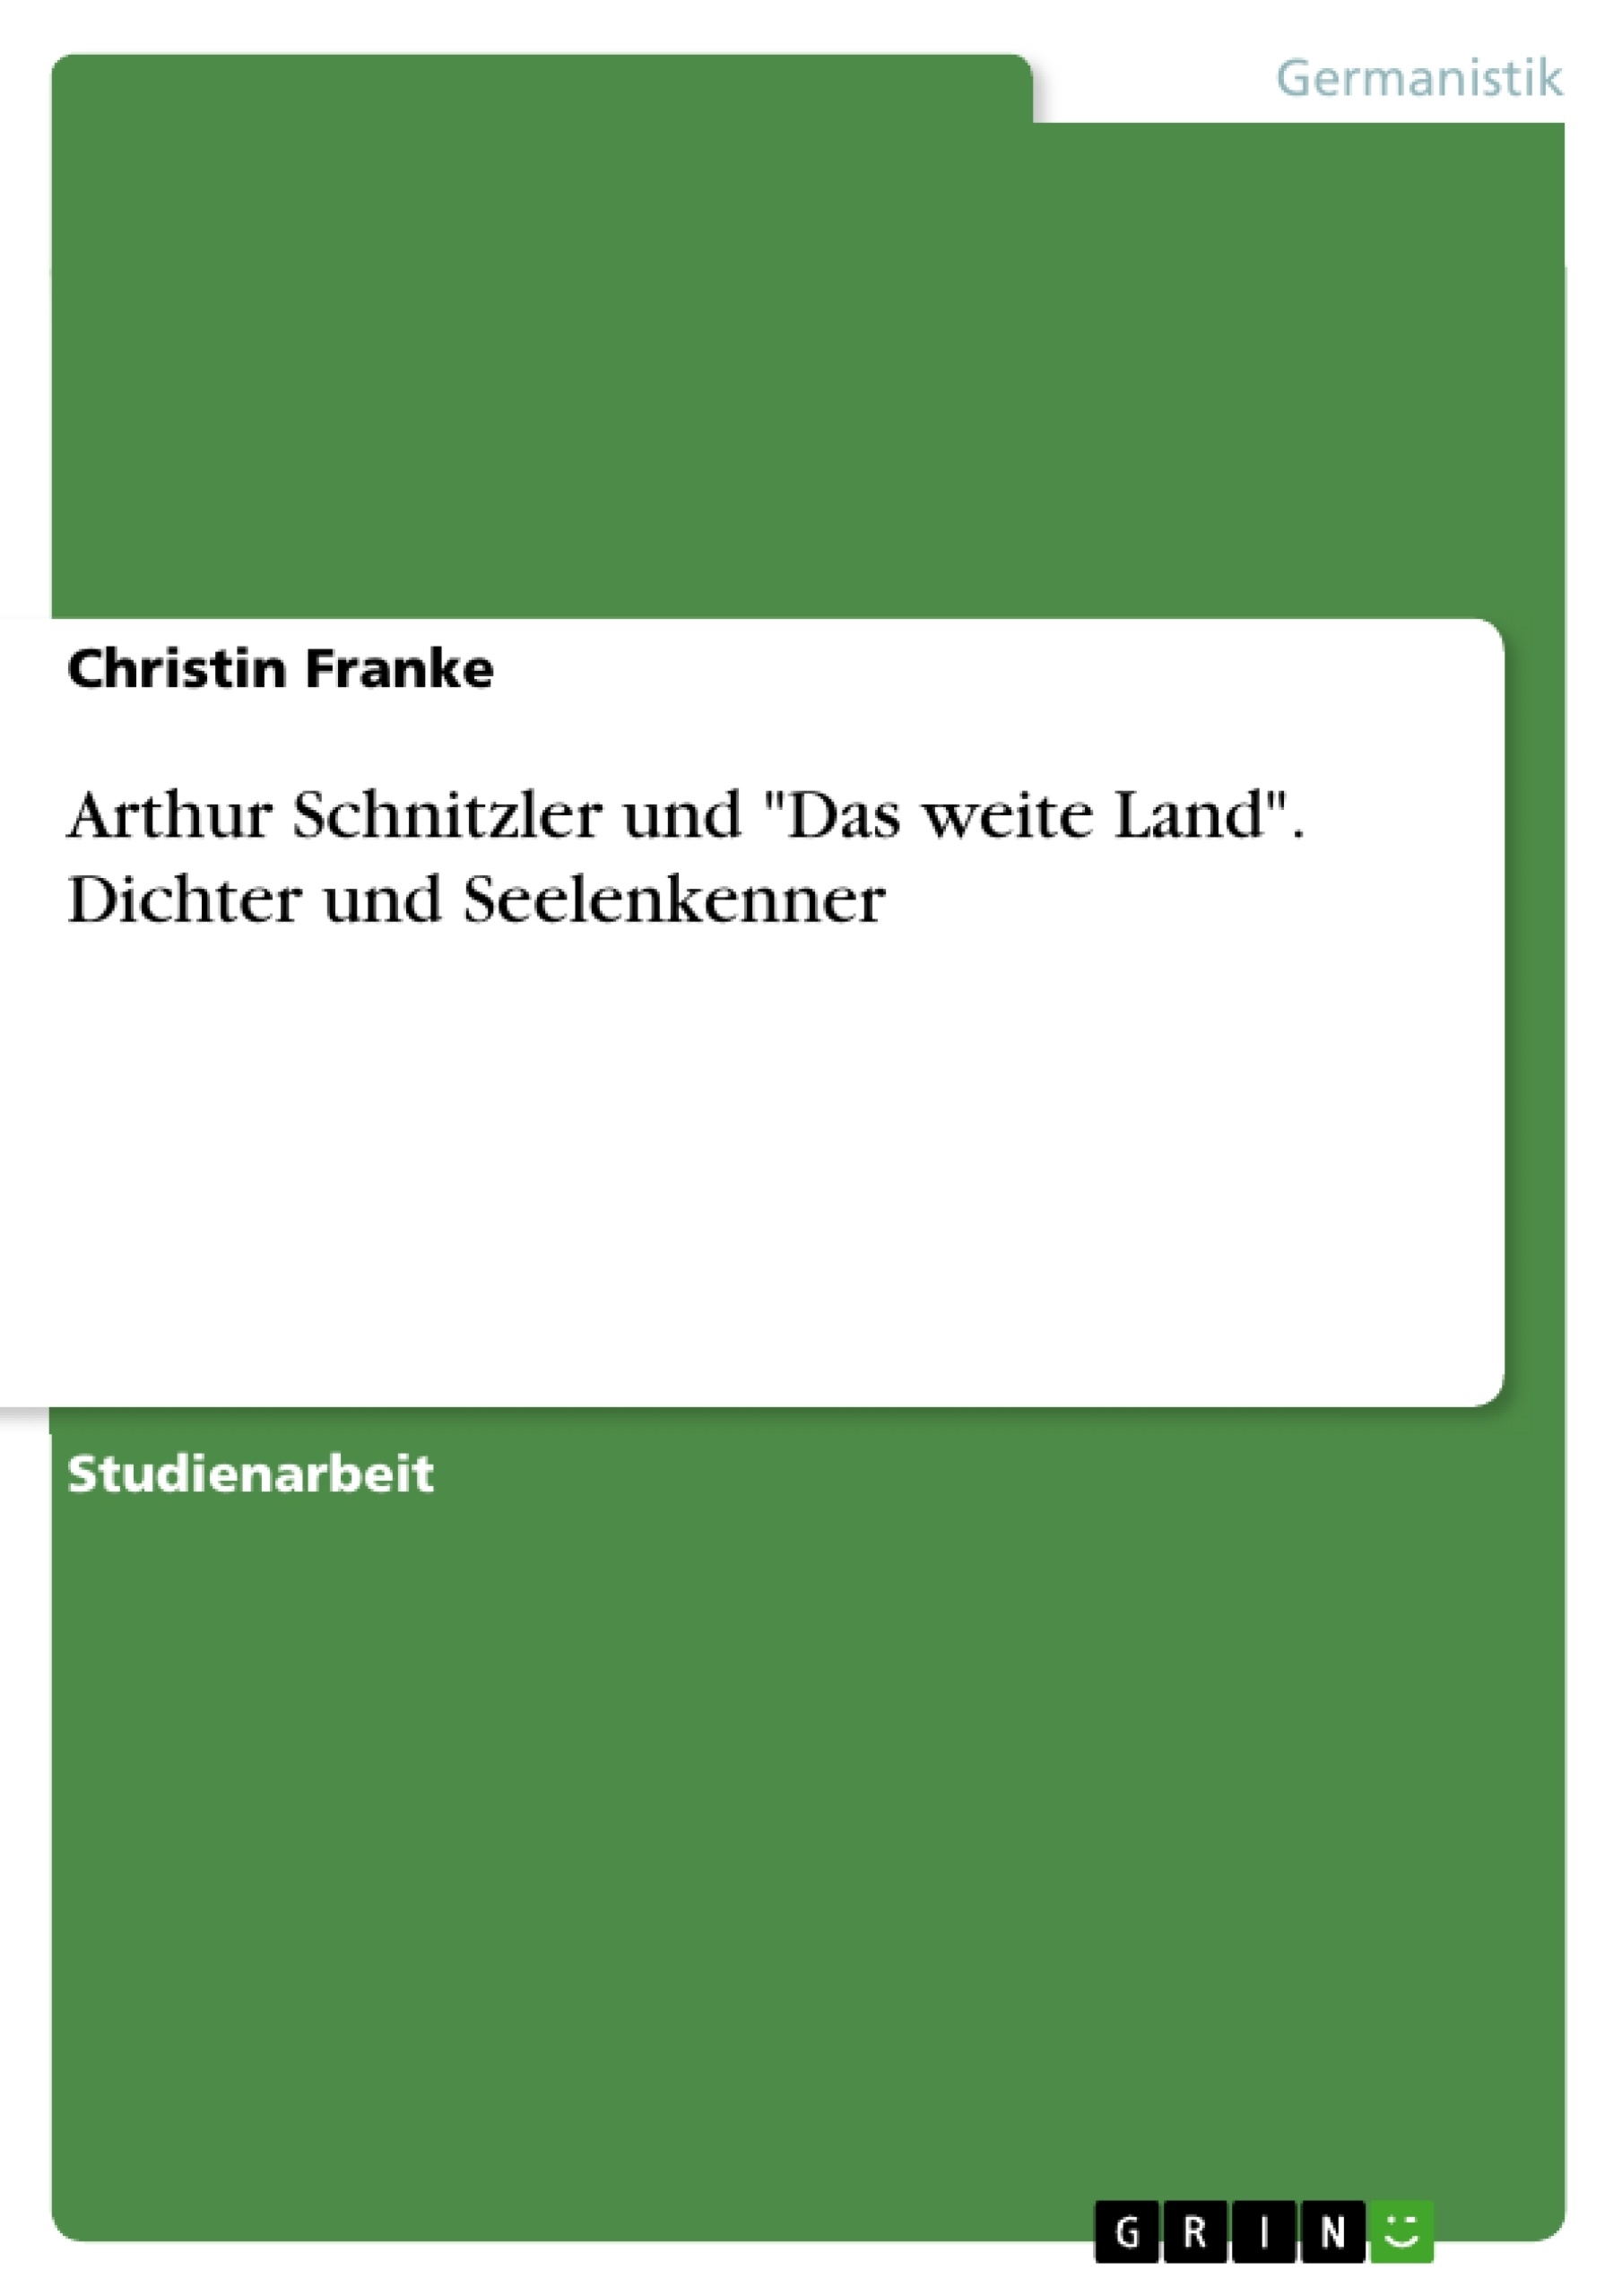 Titre: Arthur Schnitzler und "Das weite Land". Dichter und Seelenkenner